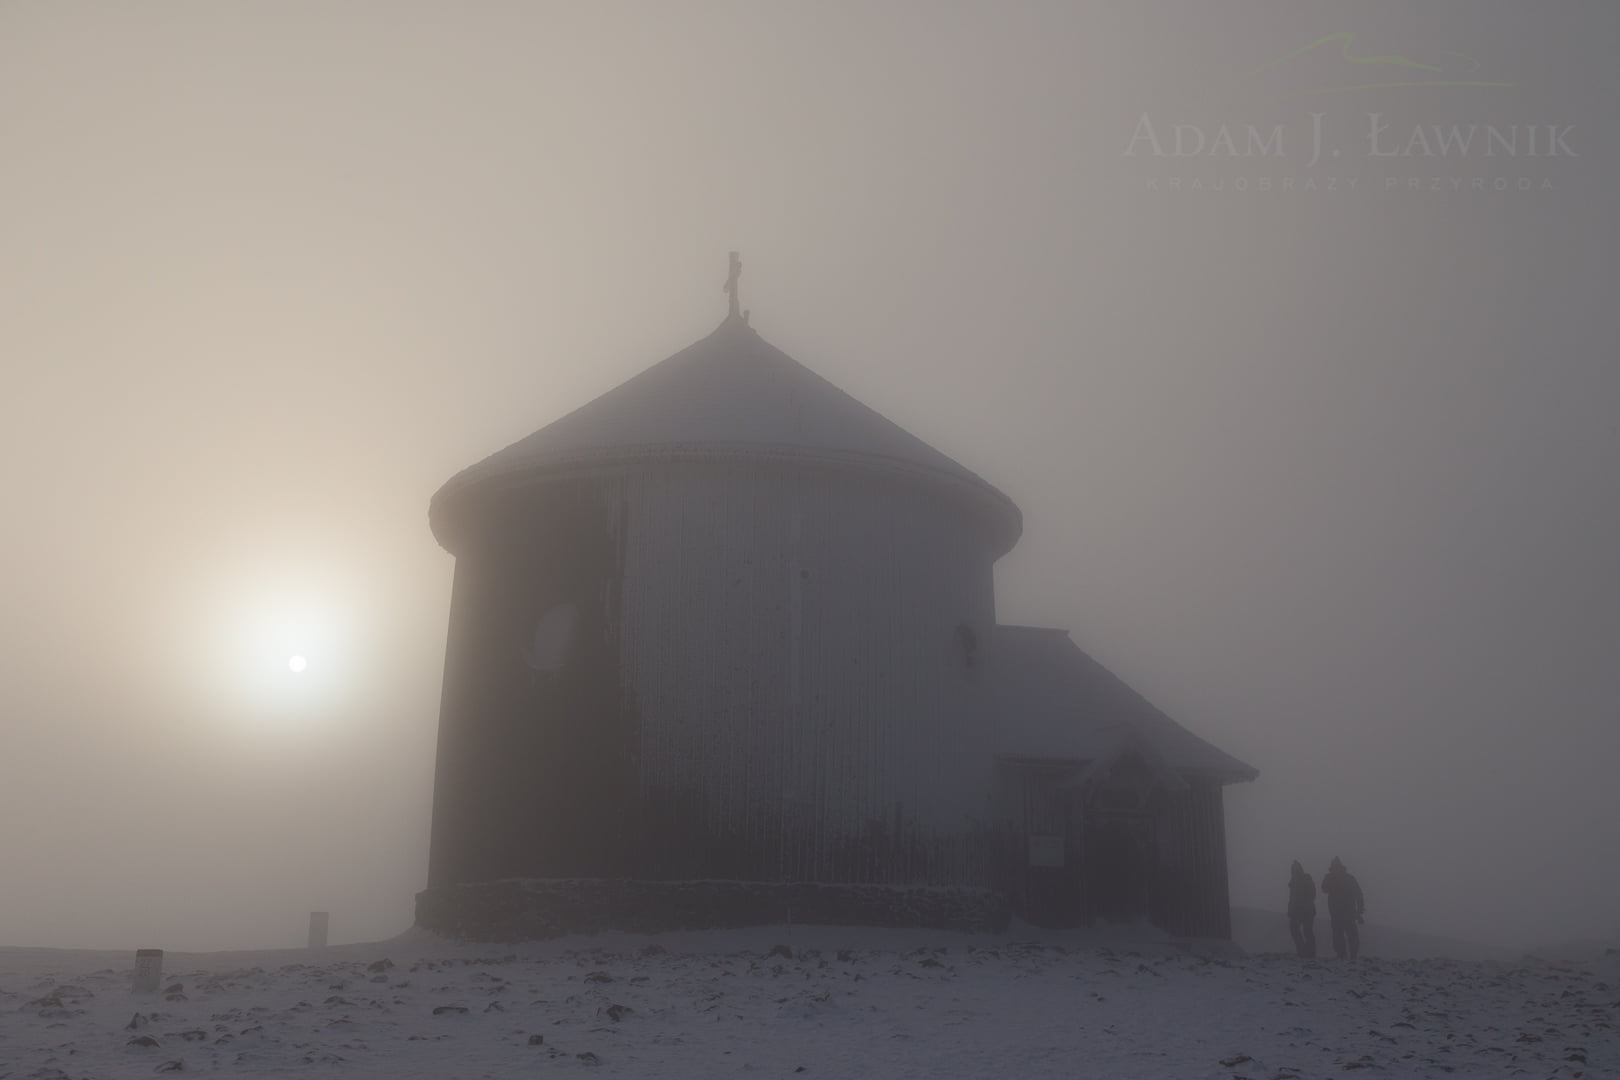 Kaplica św. Wawrzyńca na Śnieżce